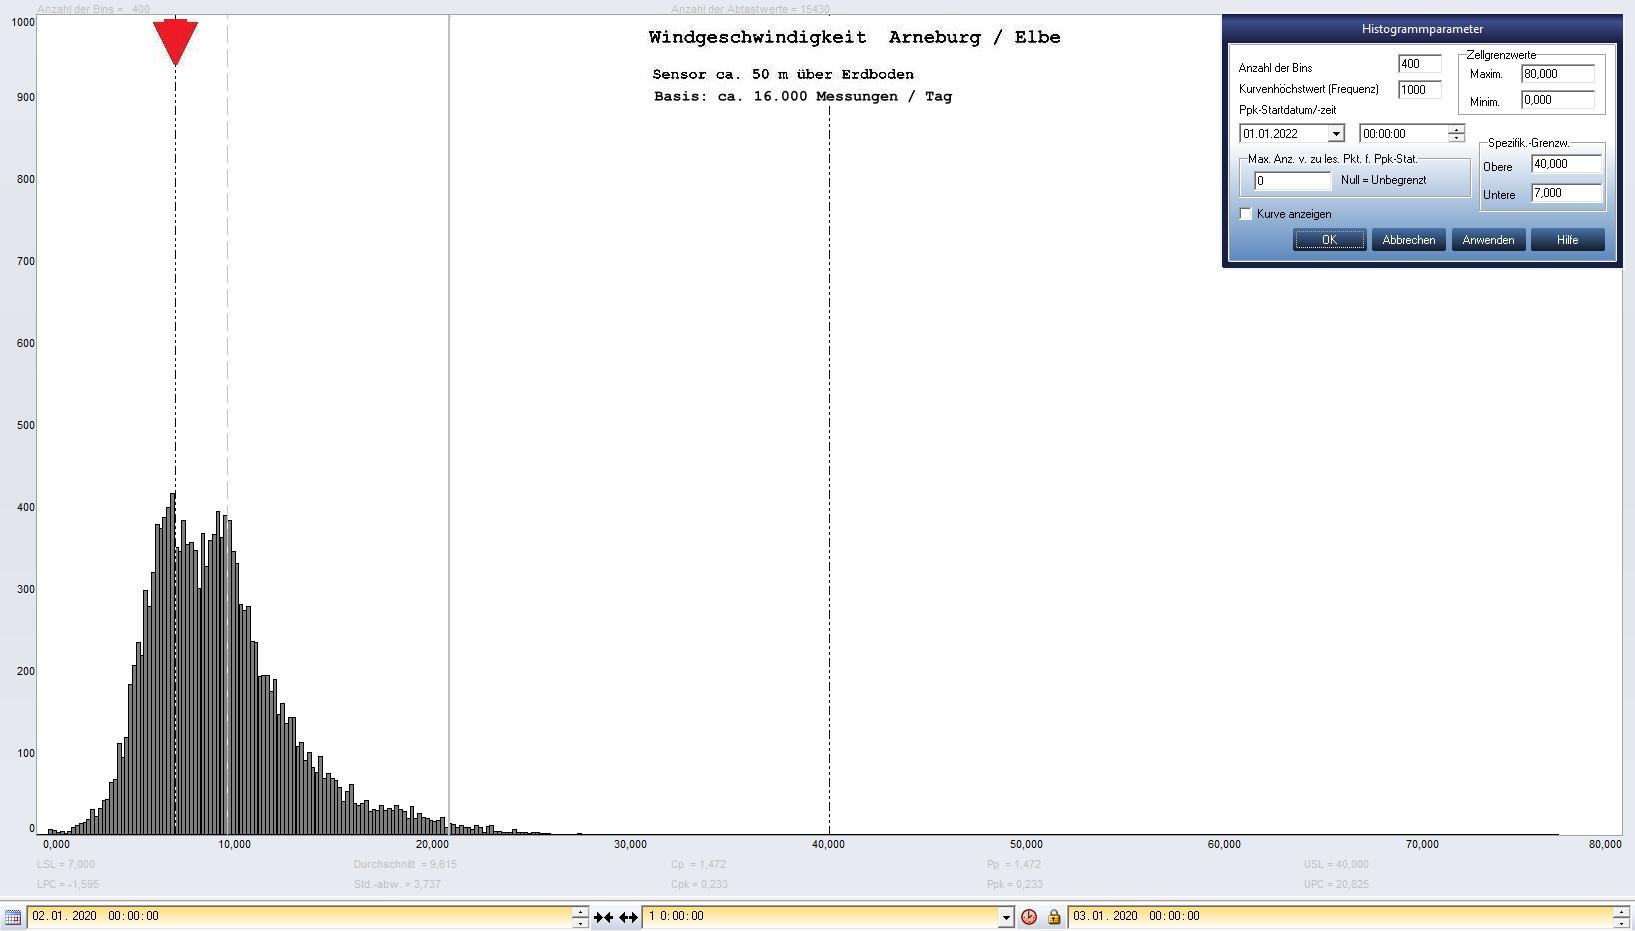 Arneburg Tages-Histogramm Winddaten, 02.01.2020
  Histogramm, Sensor auf Gebude, ca. 50 m ber Erdboden, Basis: 5s-Aufzeichnung